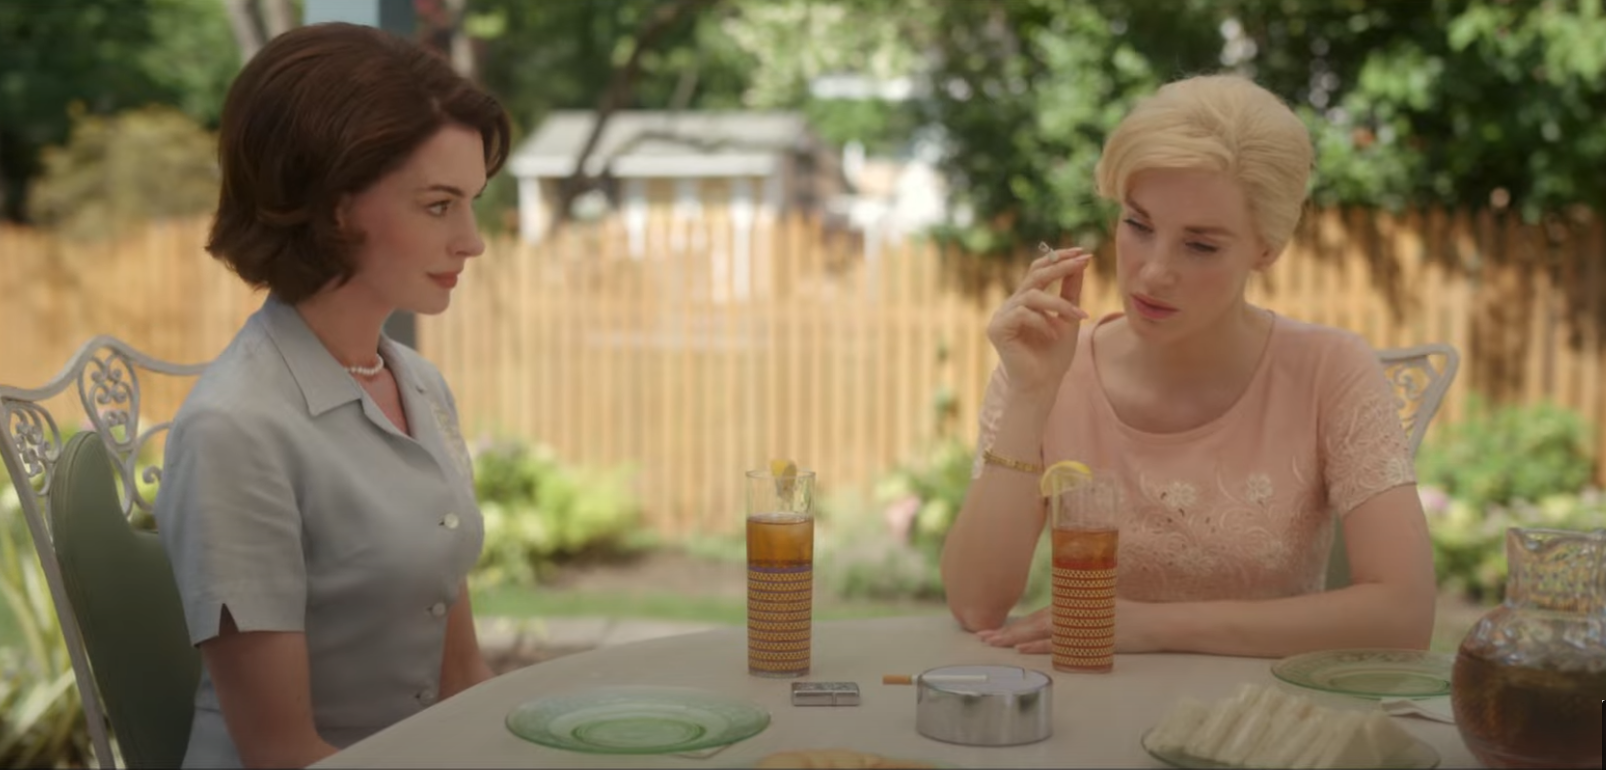 MOTHERS’ INSTINCT: Jessica Chastain e Anne Hathaway protagoniste di un intenso thriller psicologico, al cinema dal 9 maggio